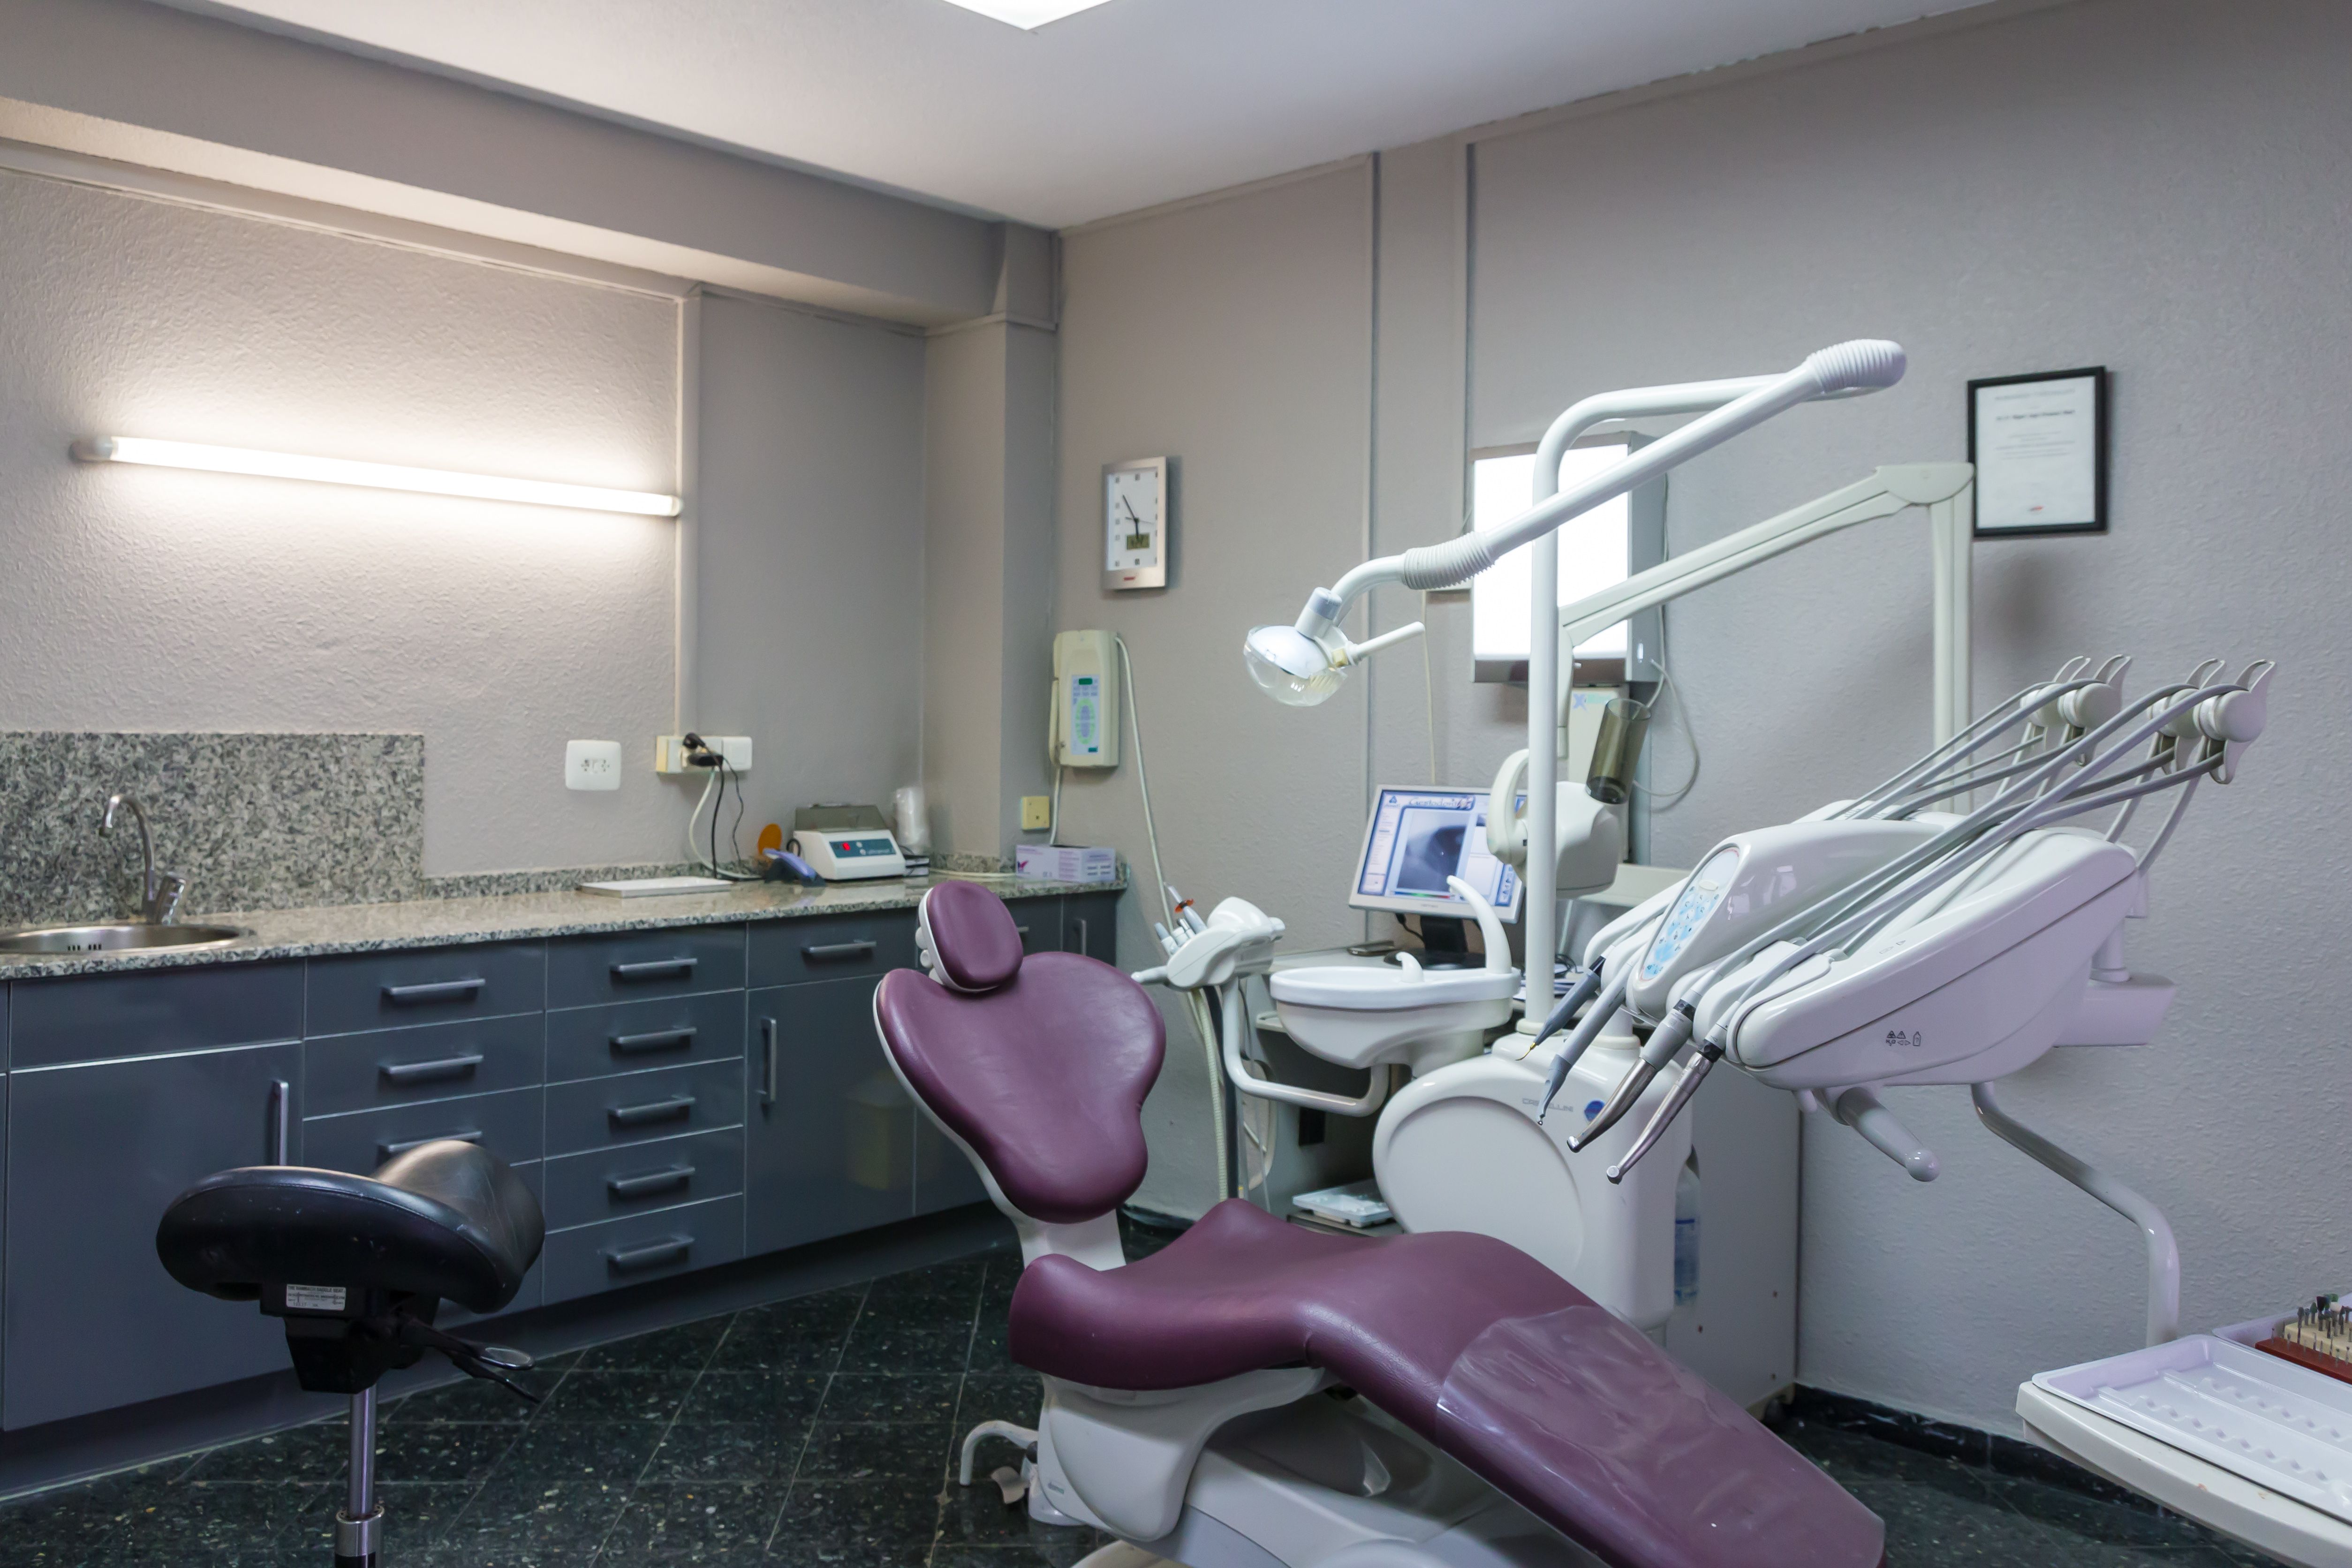 Foto 2 de Dentistas en Alzira | Clínica Dental Presencia